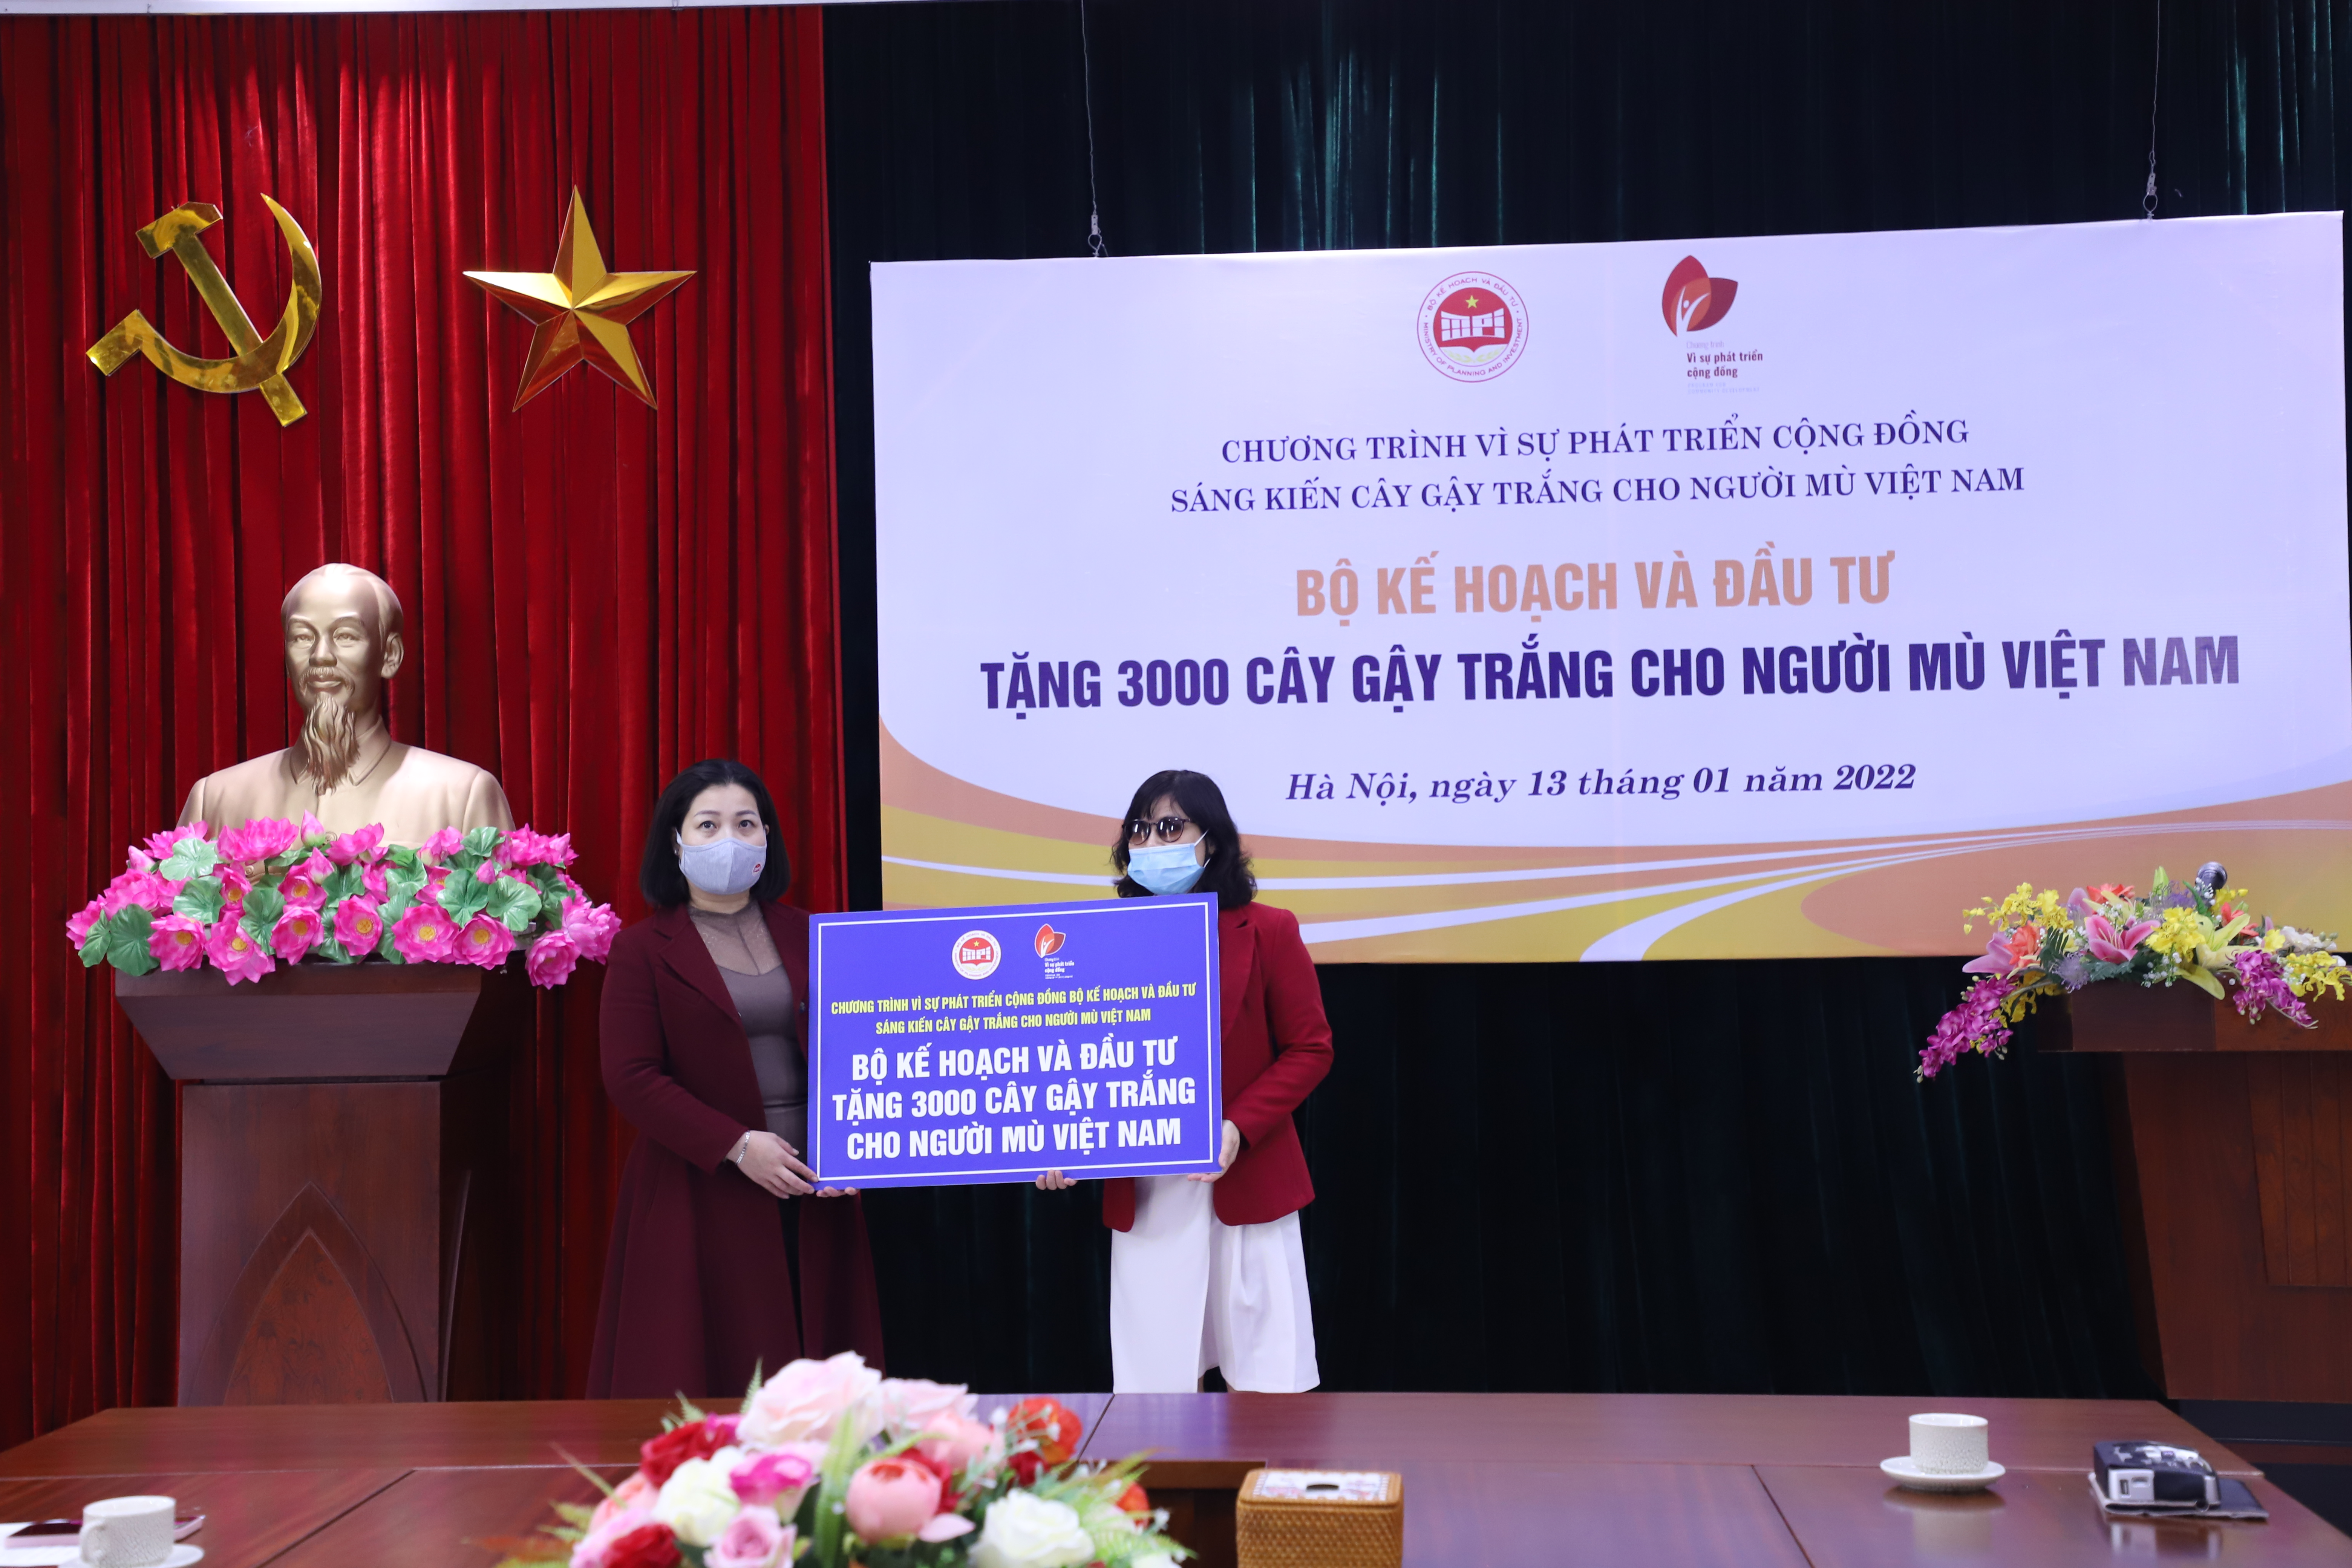 Hình ảnh: Bộ Kế hoạch và Đầu tư tiếp tục trao 3000 cây gậy trắng cho Hội Người mù Việt Nam